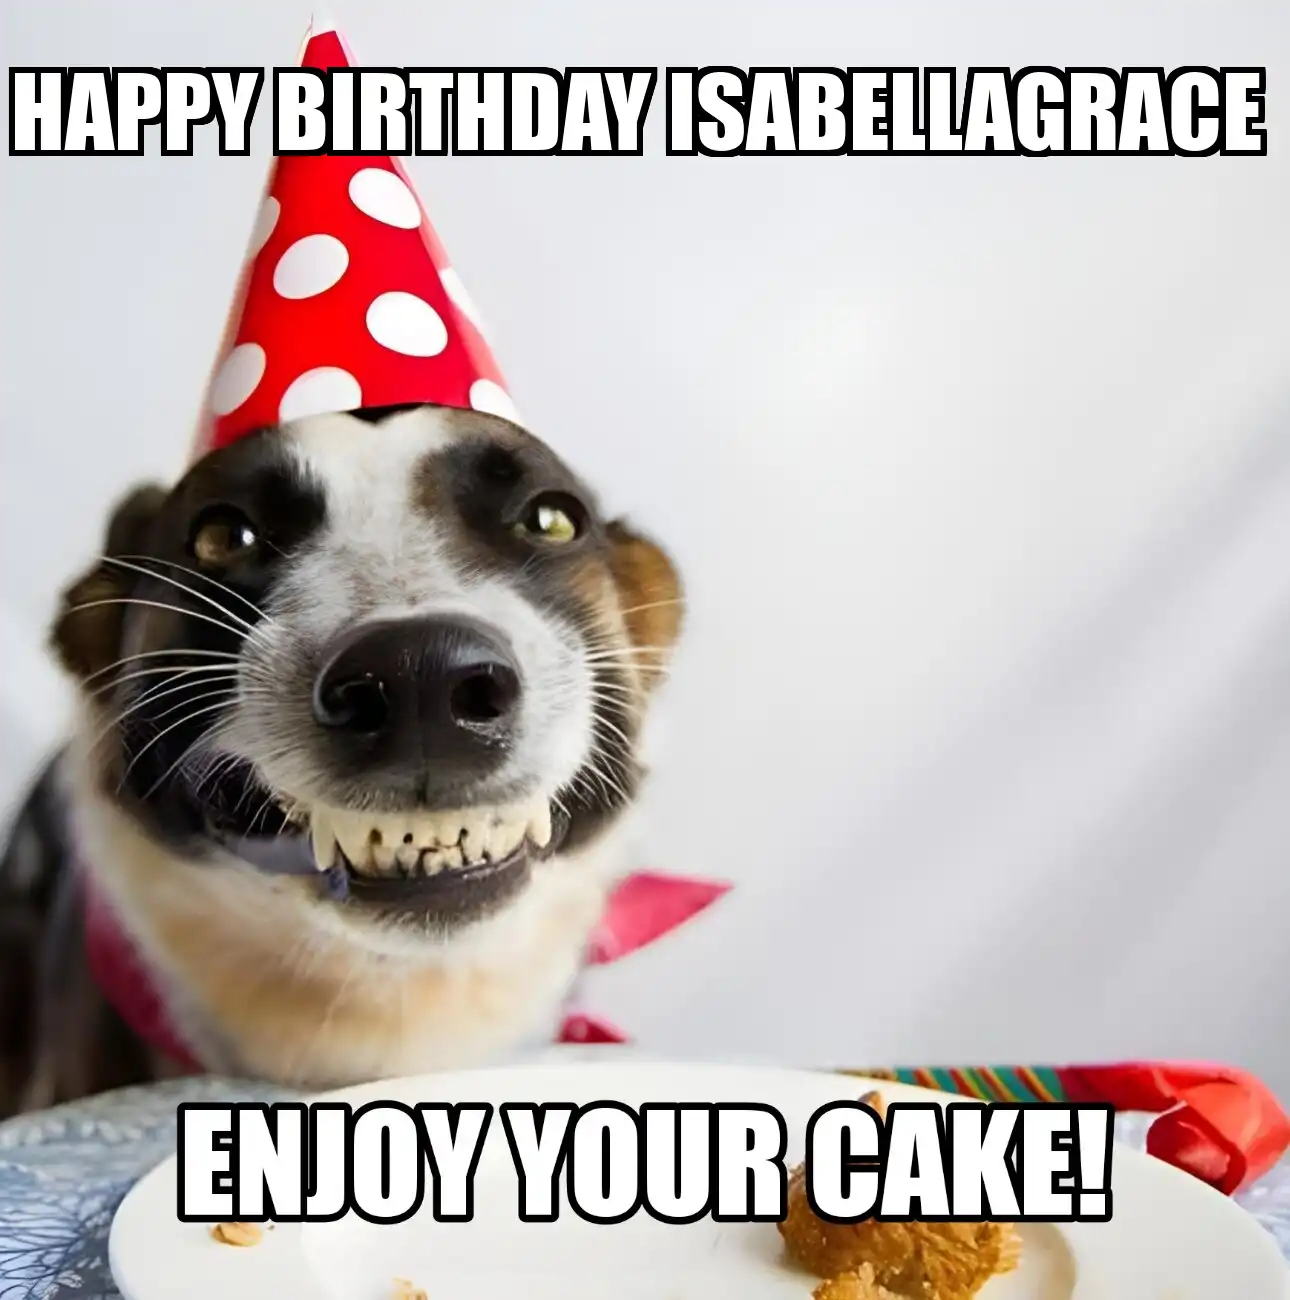 Happy Birthday Isabellagrace Enjoy Your Cake Dog Meme